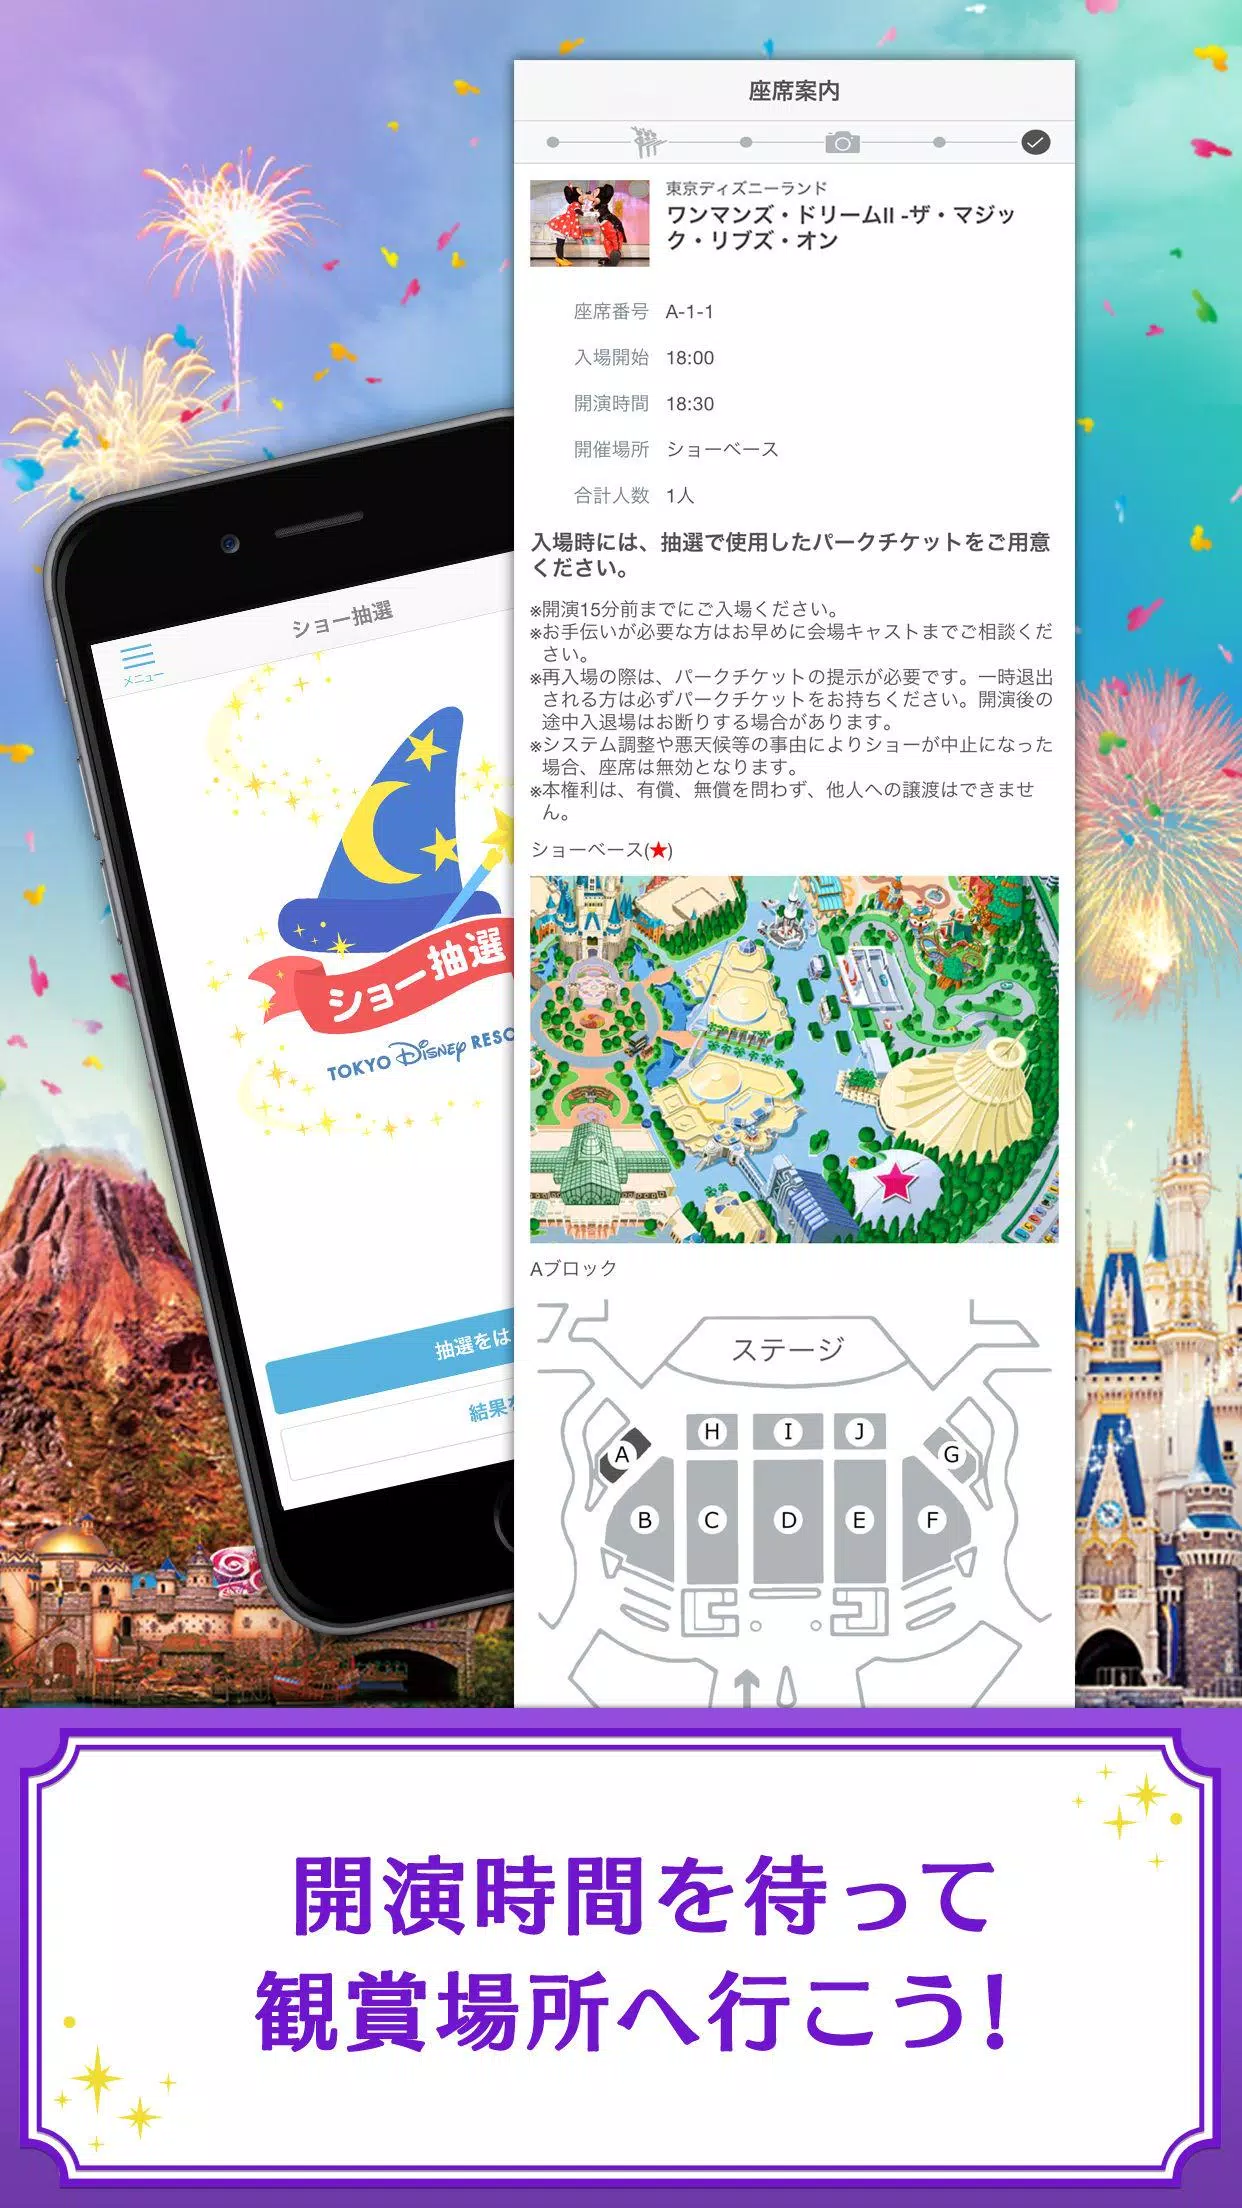 東京ディズニーリゾート公式 ショー抽選アプリ Apk For Android Download